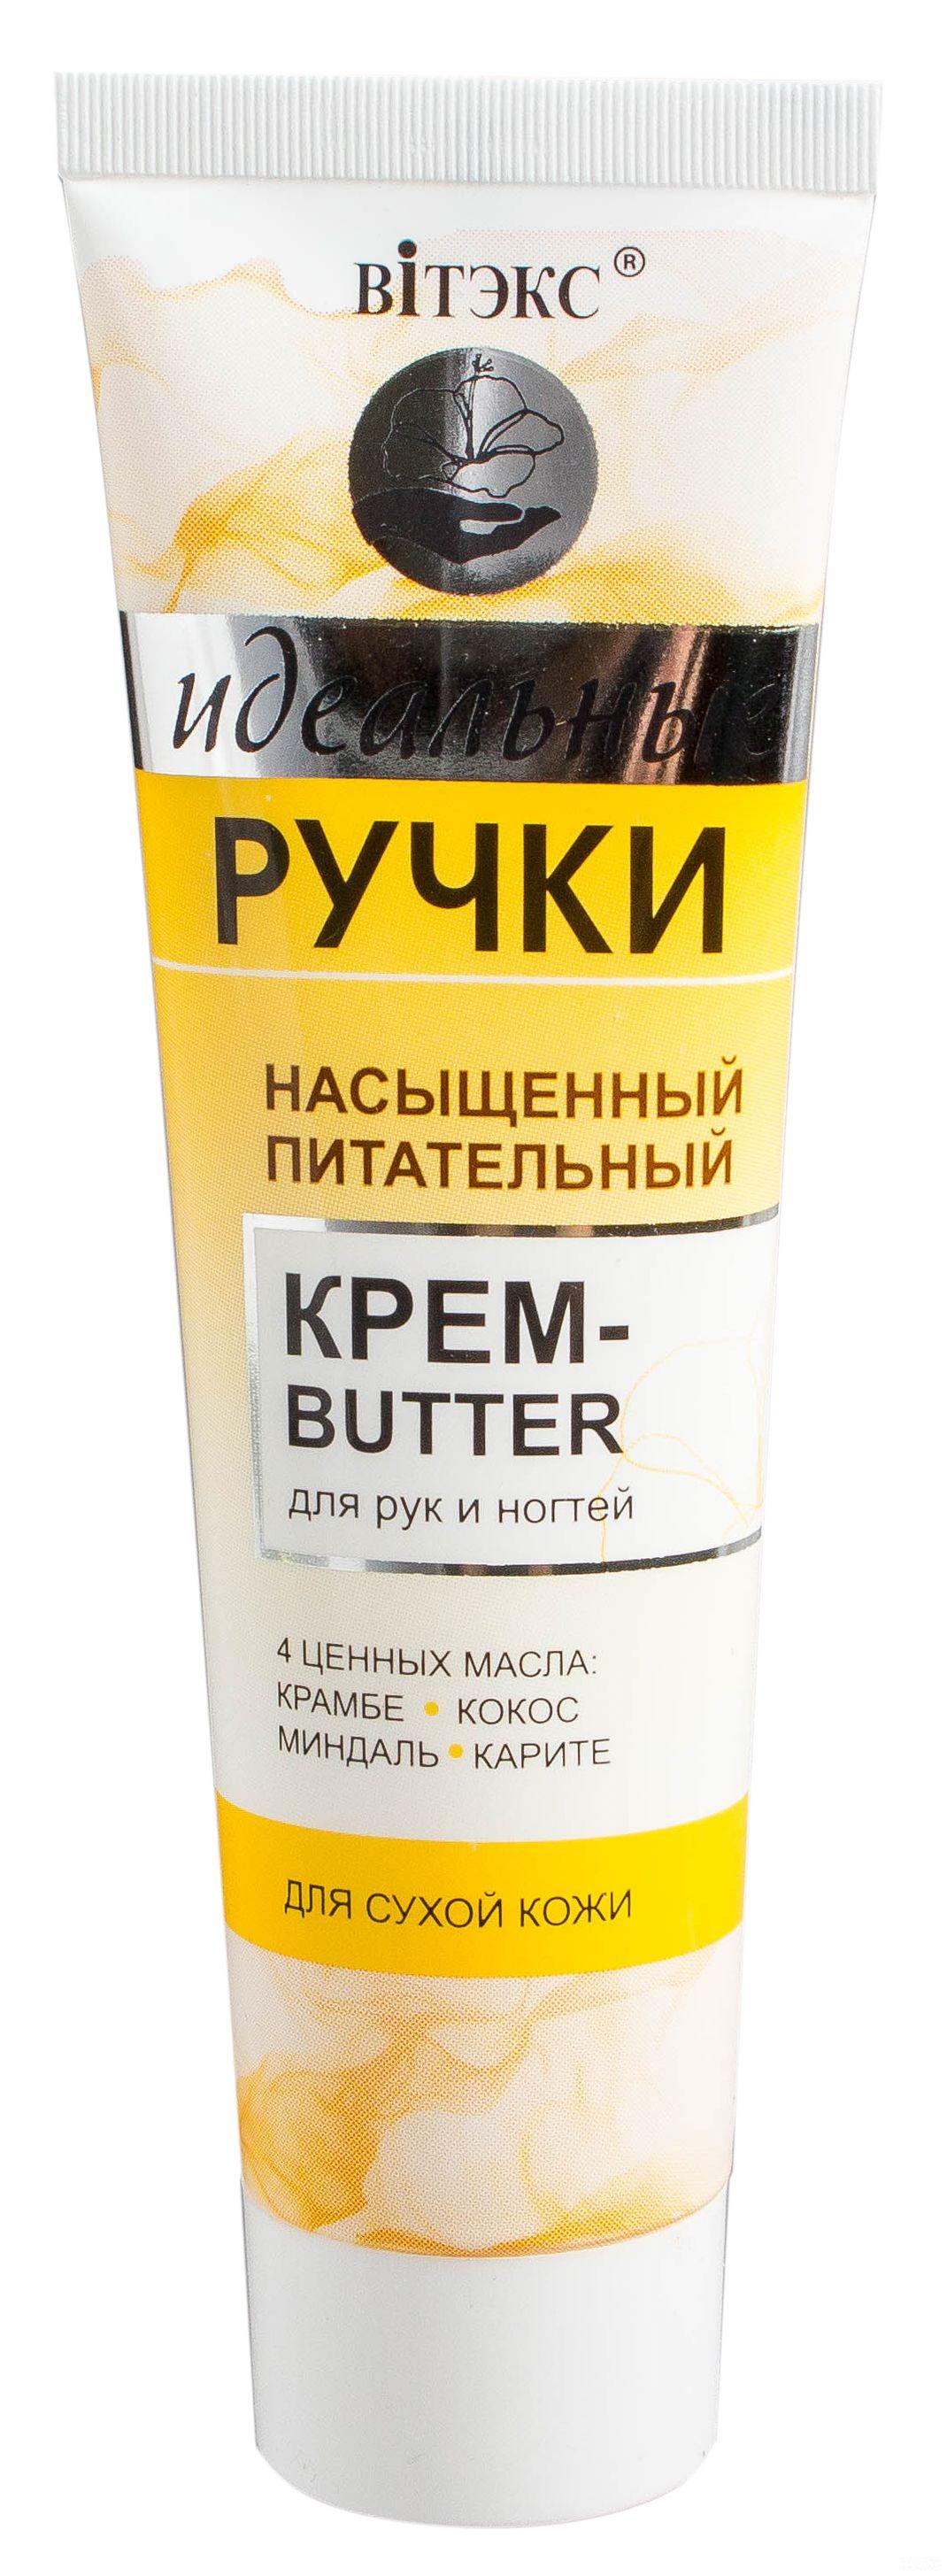 Крем для ногтей купить. Крем для ногтей. Крем-баттер для рук. Белорусский крем баттер для рук. Сухой кожи для ногтей крем.